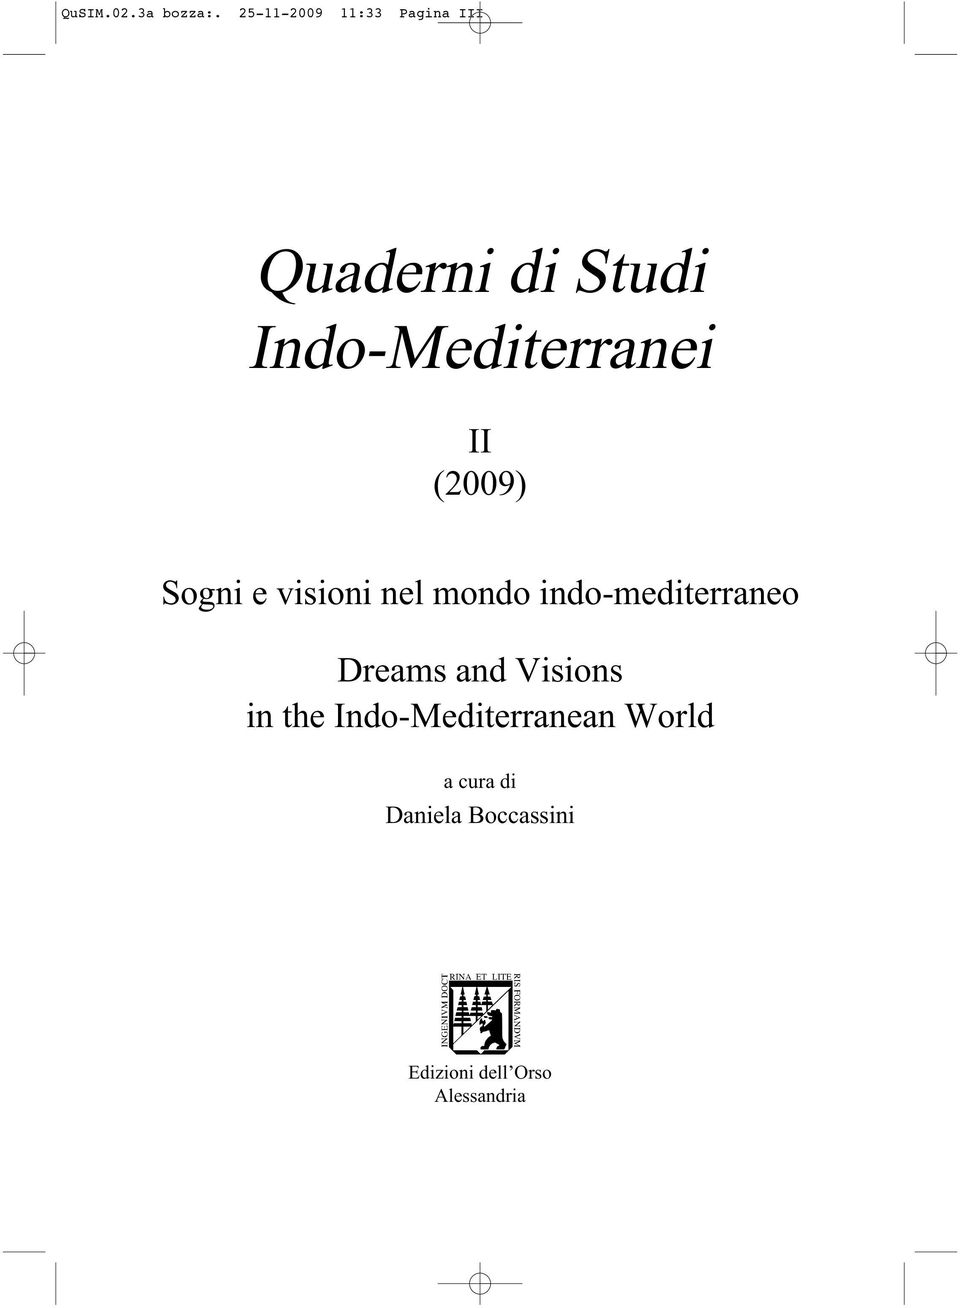 Indo-Mediterranei II (2009) Sogni e visioni nel mondo